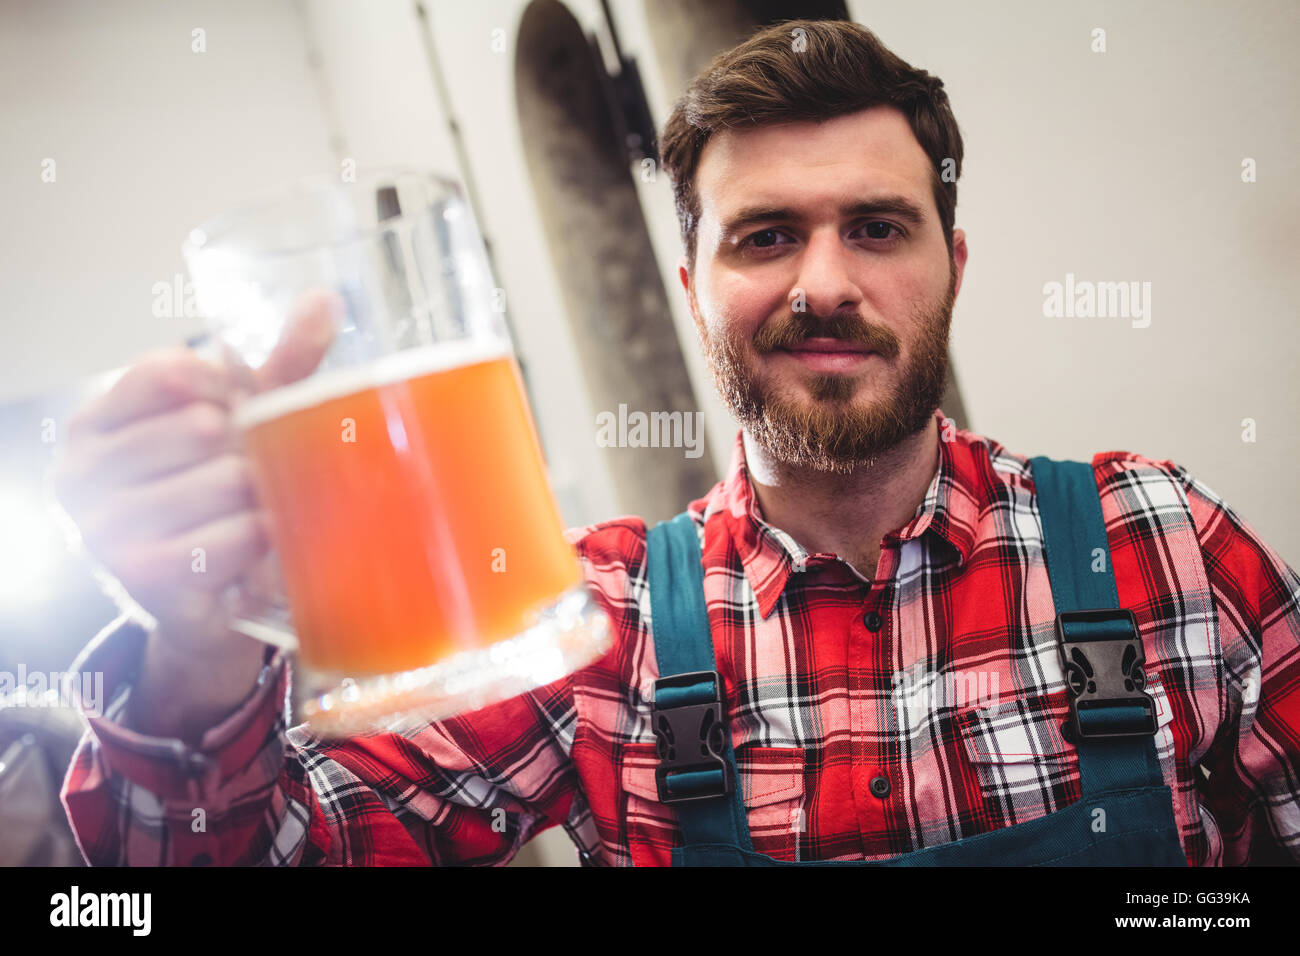 Portrait of manufacturer holding beer jug Stock Photo